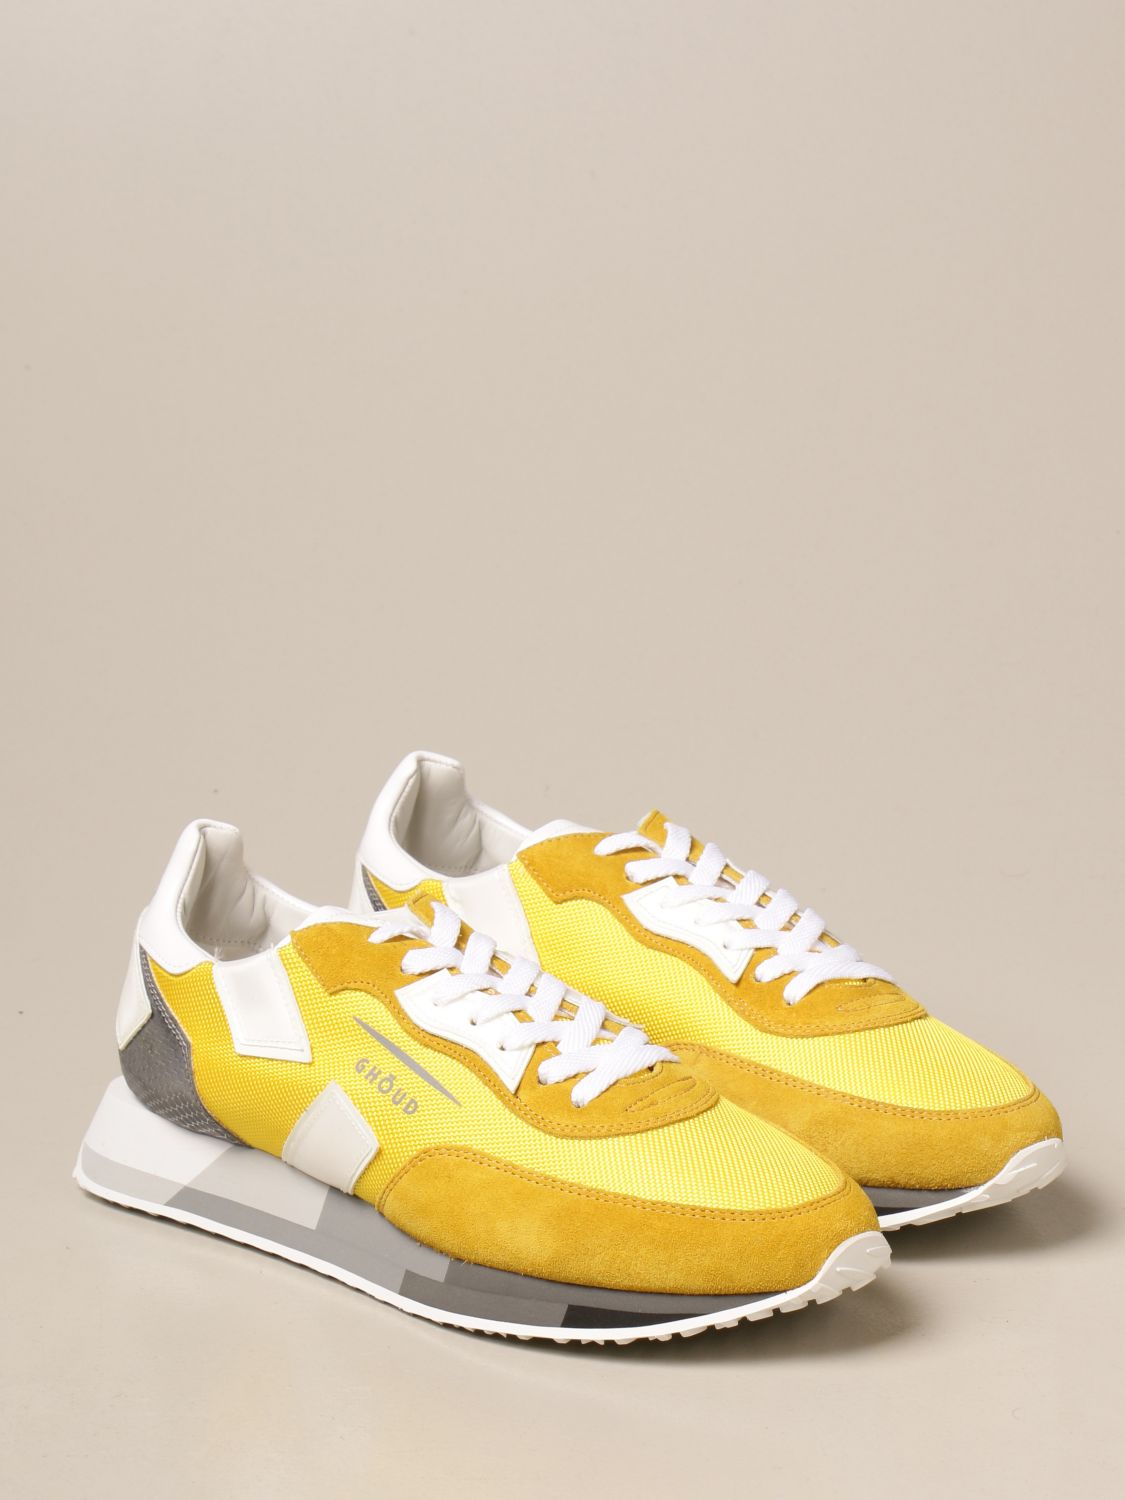 Ghoud Outlet: Sneakers man - Yellow | Ghoud Sneakers RMLM MS26 online ...